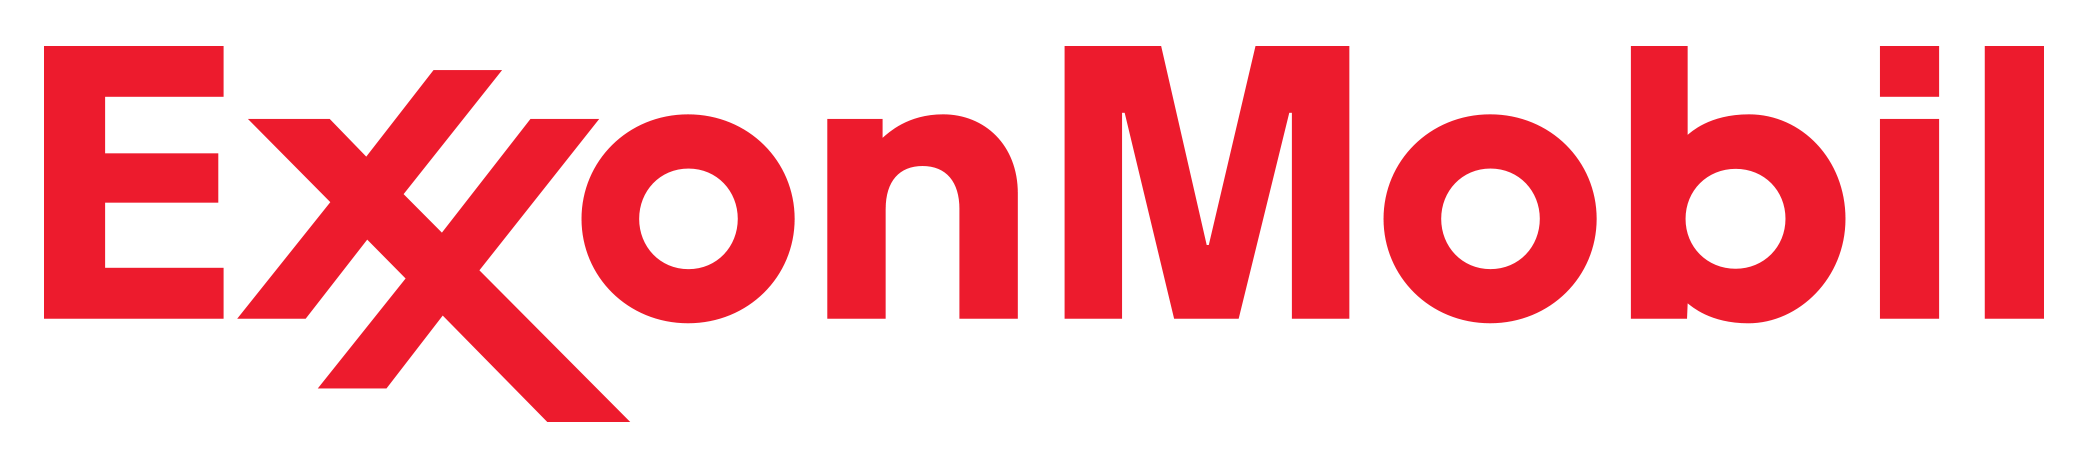 Exxon Mobil Logo PNG Image